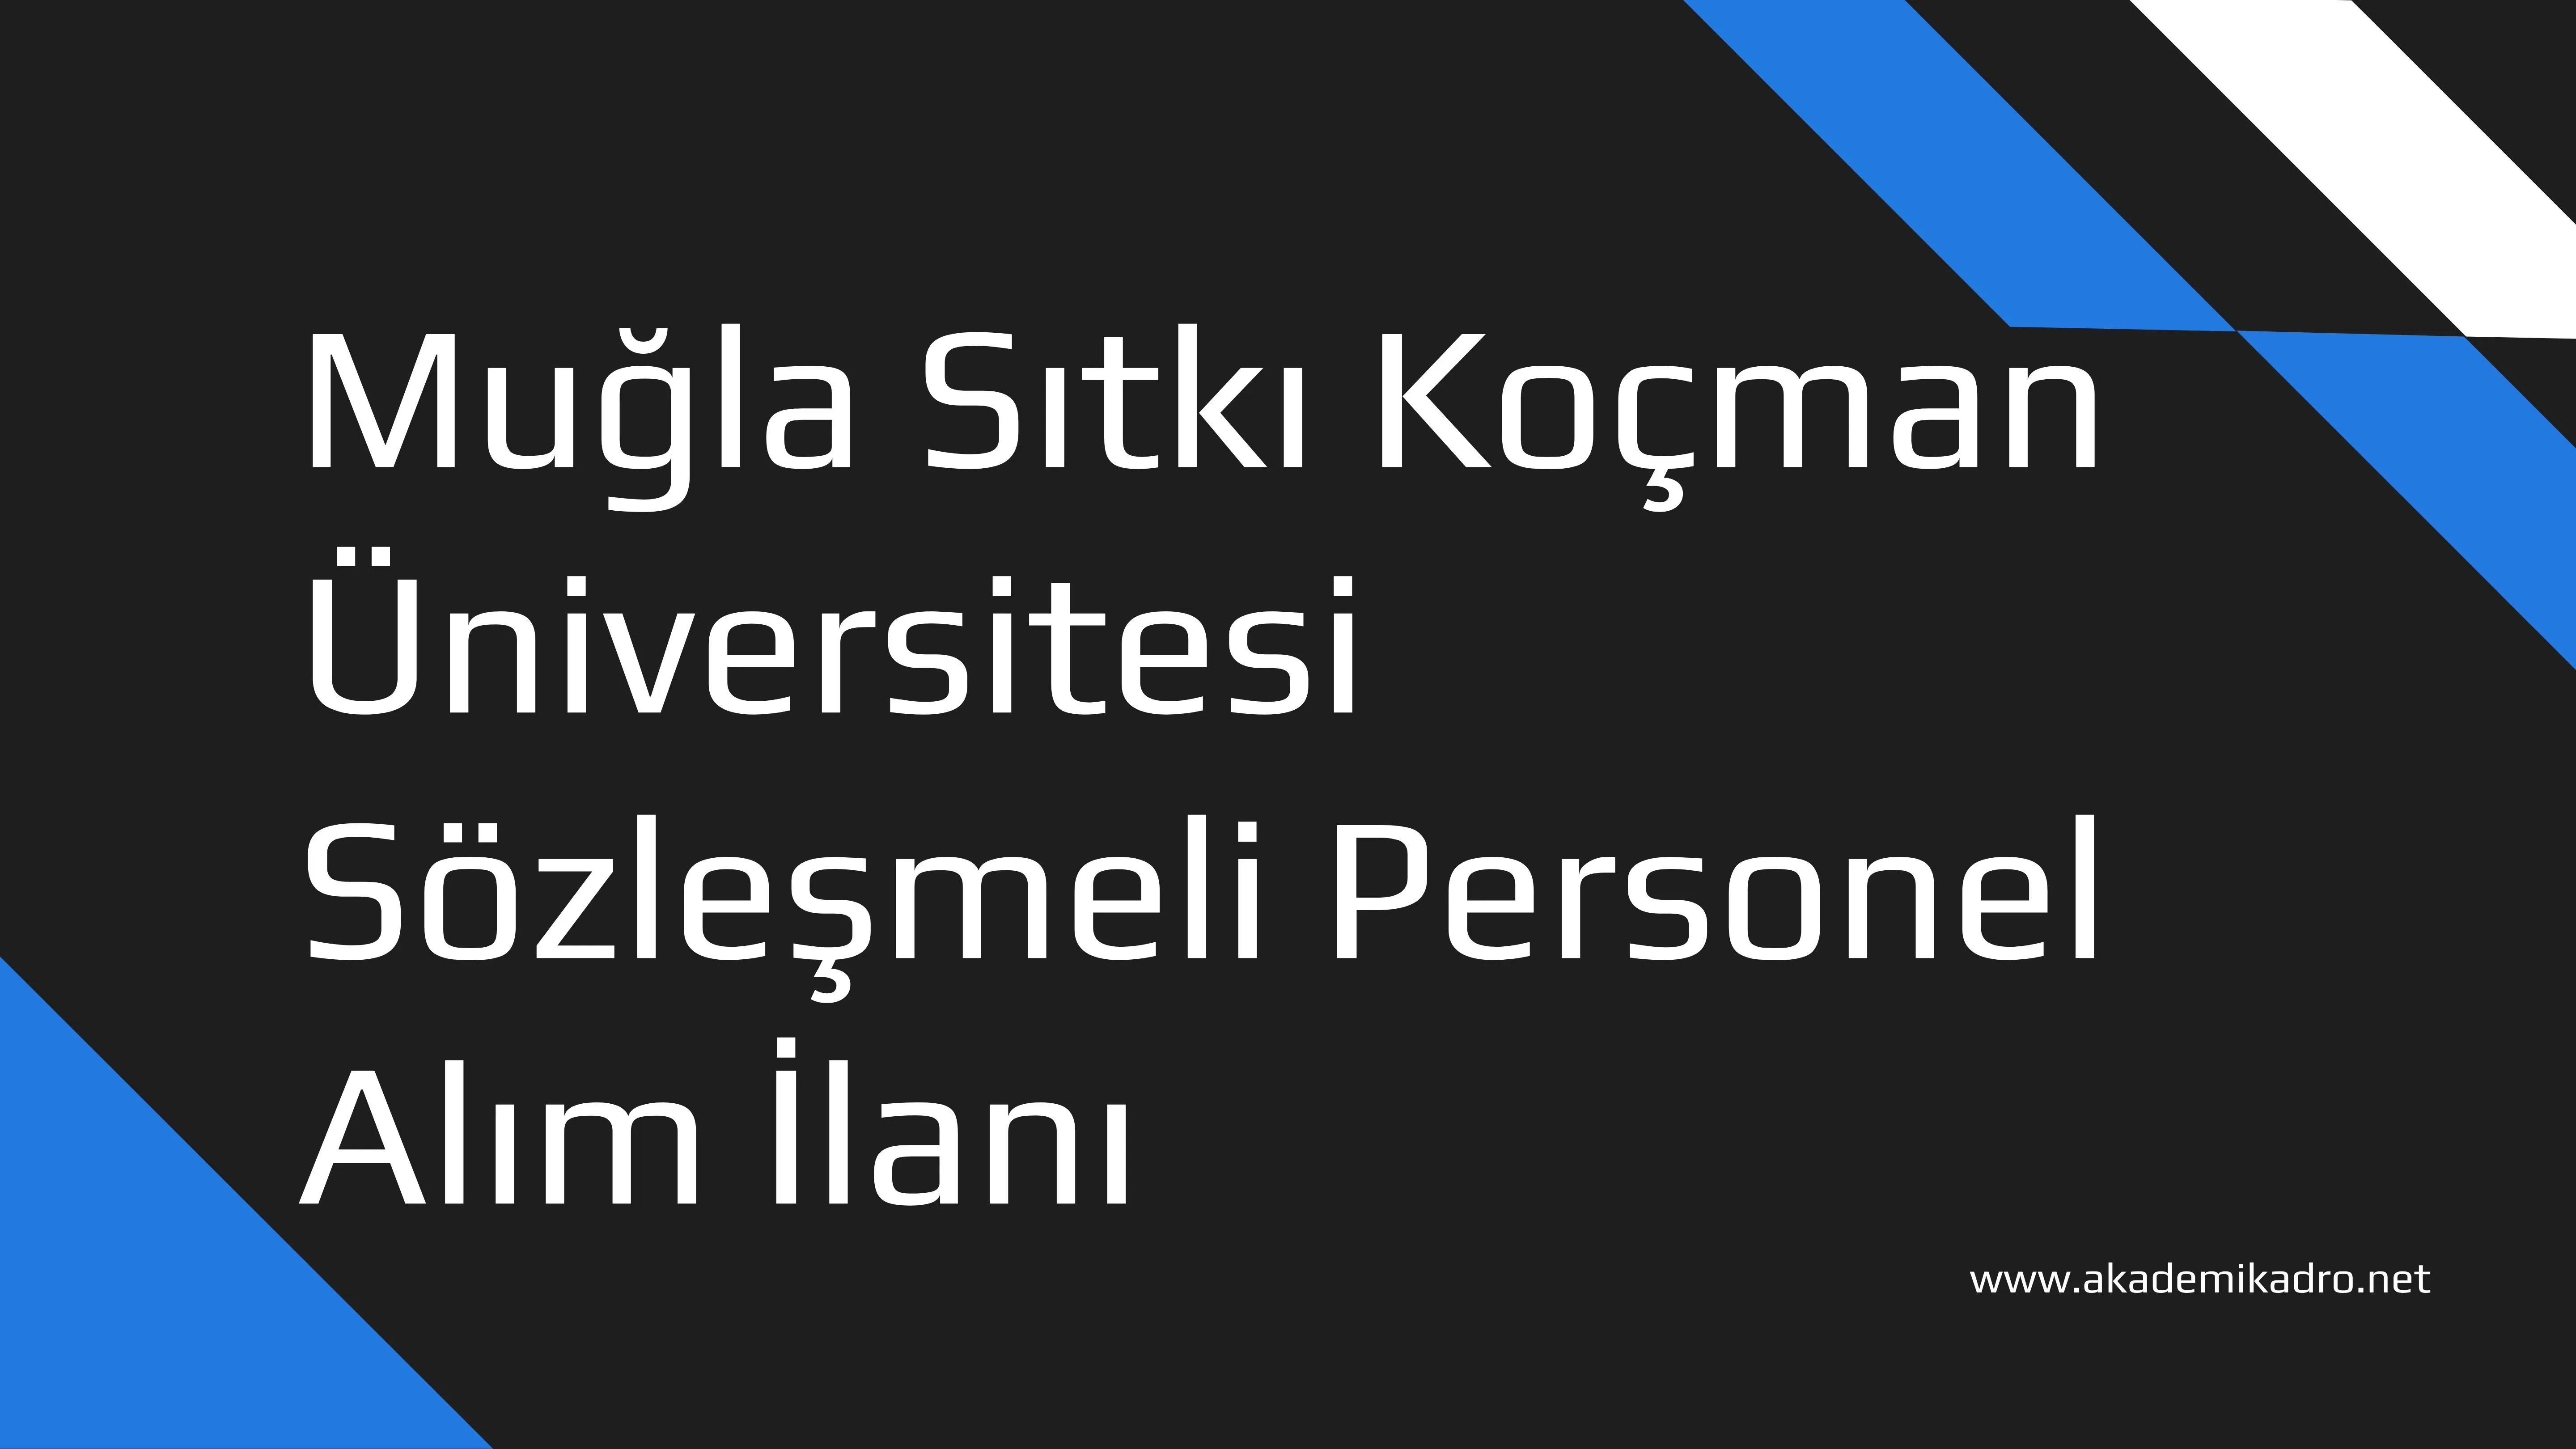 Muğla Sıtkı Koçman Üniversitesi 42 Sözleşmeli personel alacak.